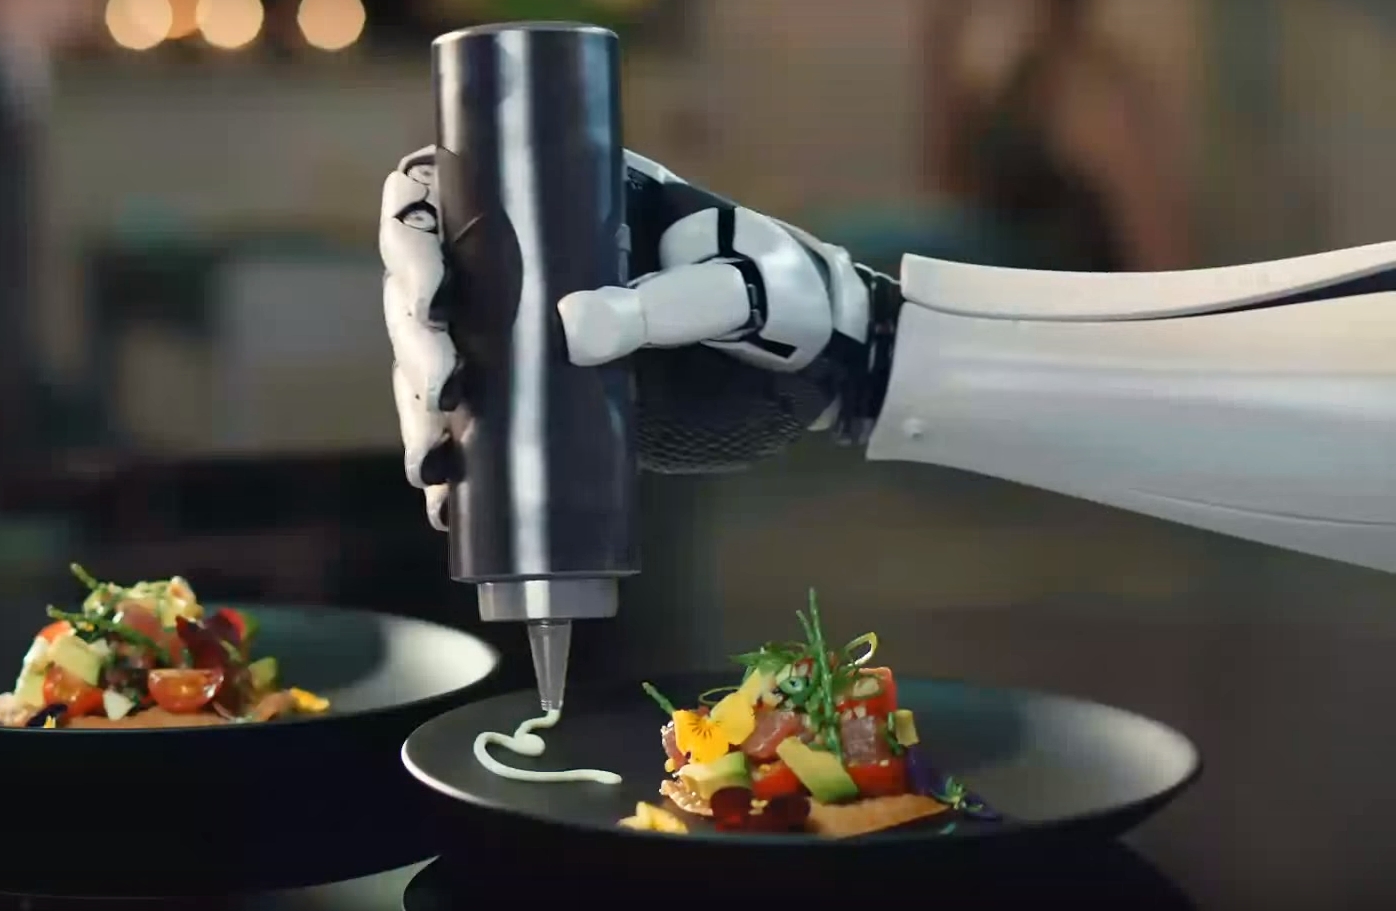 The-robotic-chef_Moley-Robotics.jpg